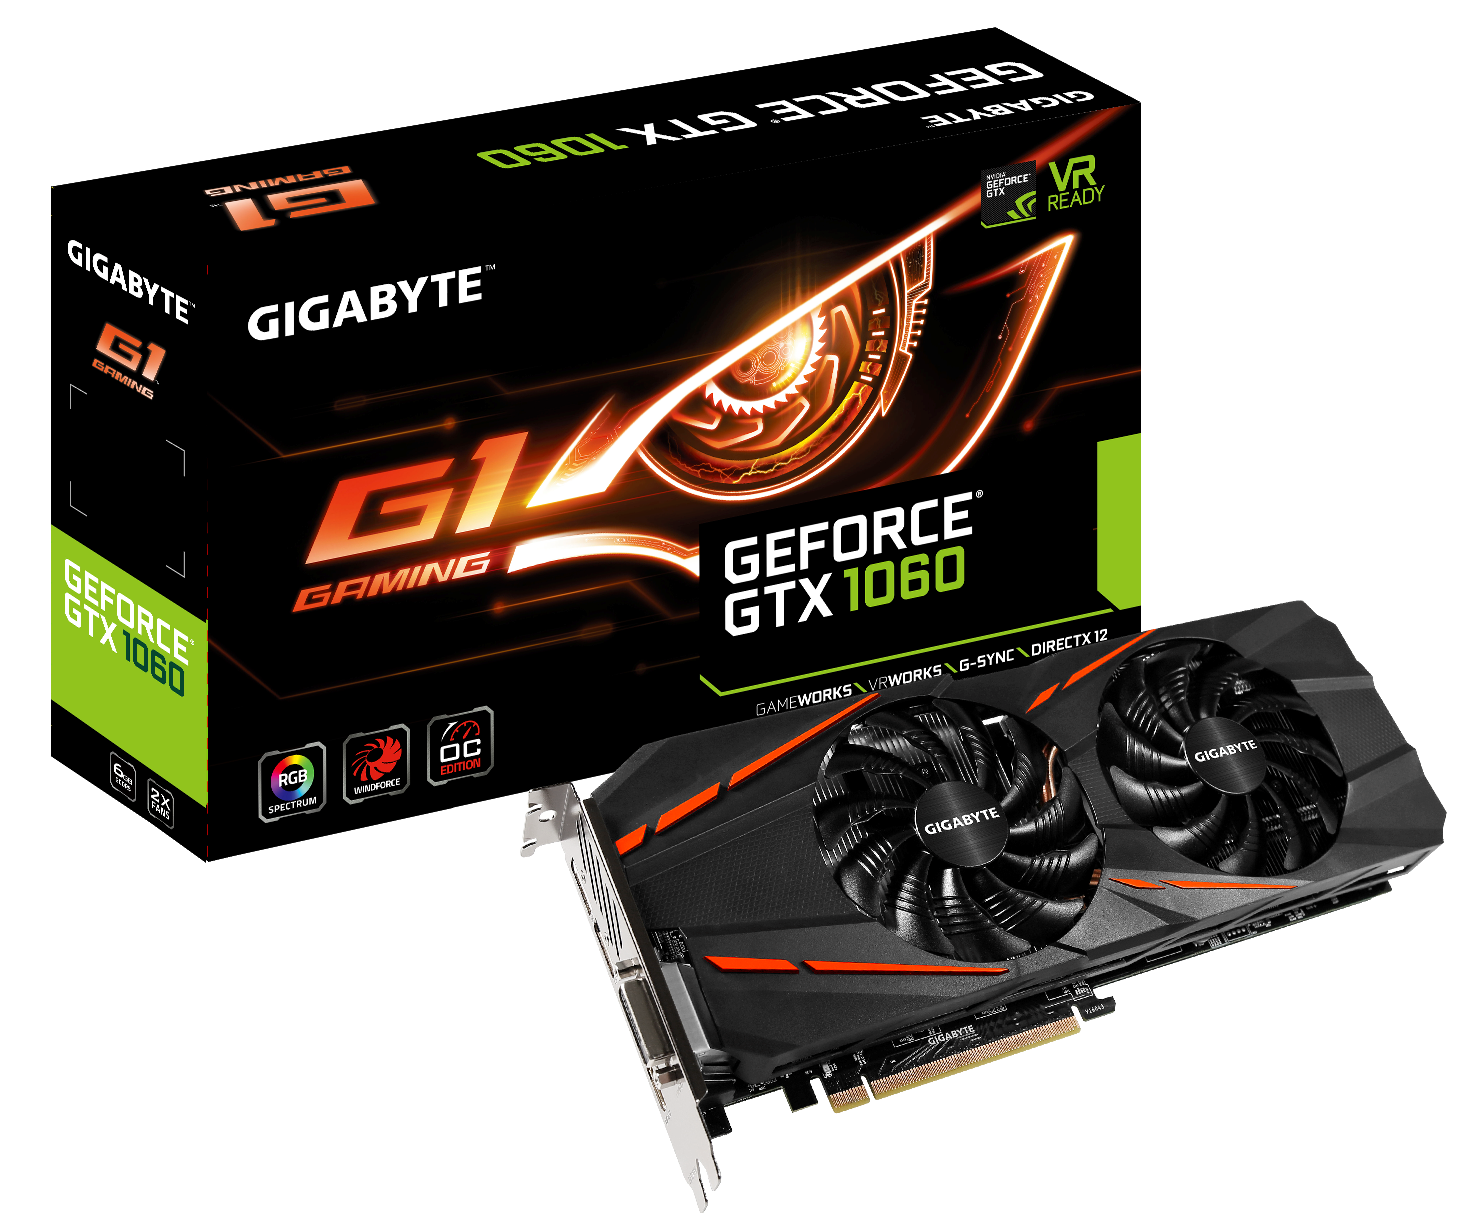 GIGABYTE Introduces GeForce® GTX 1060 Card Line | News - GIGABYTE Global